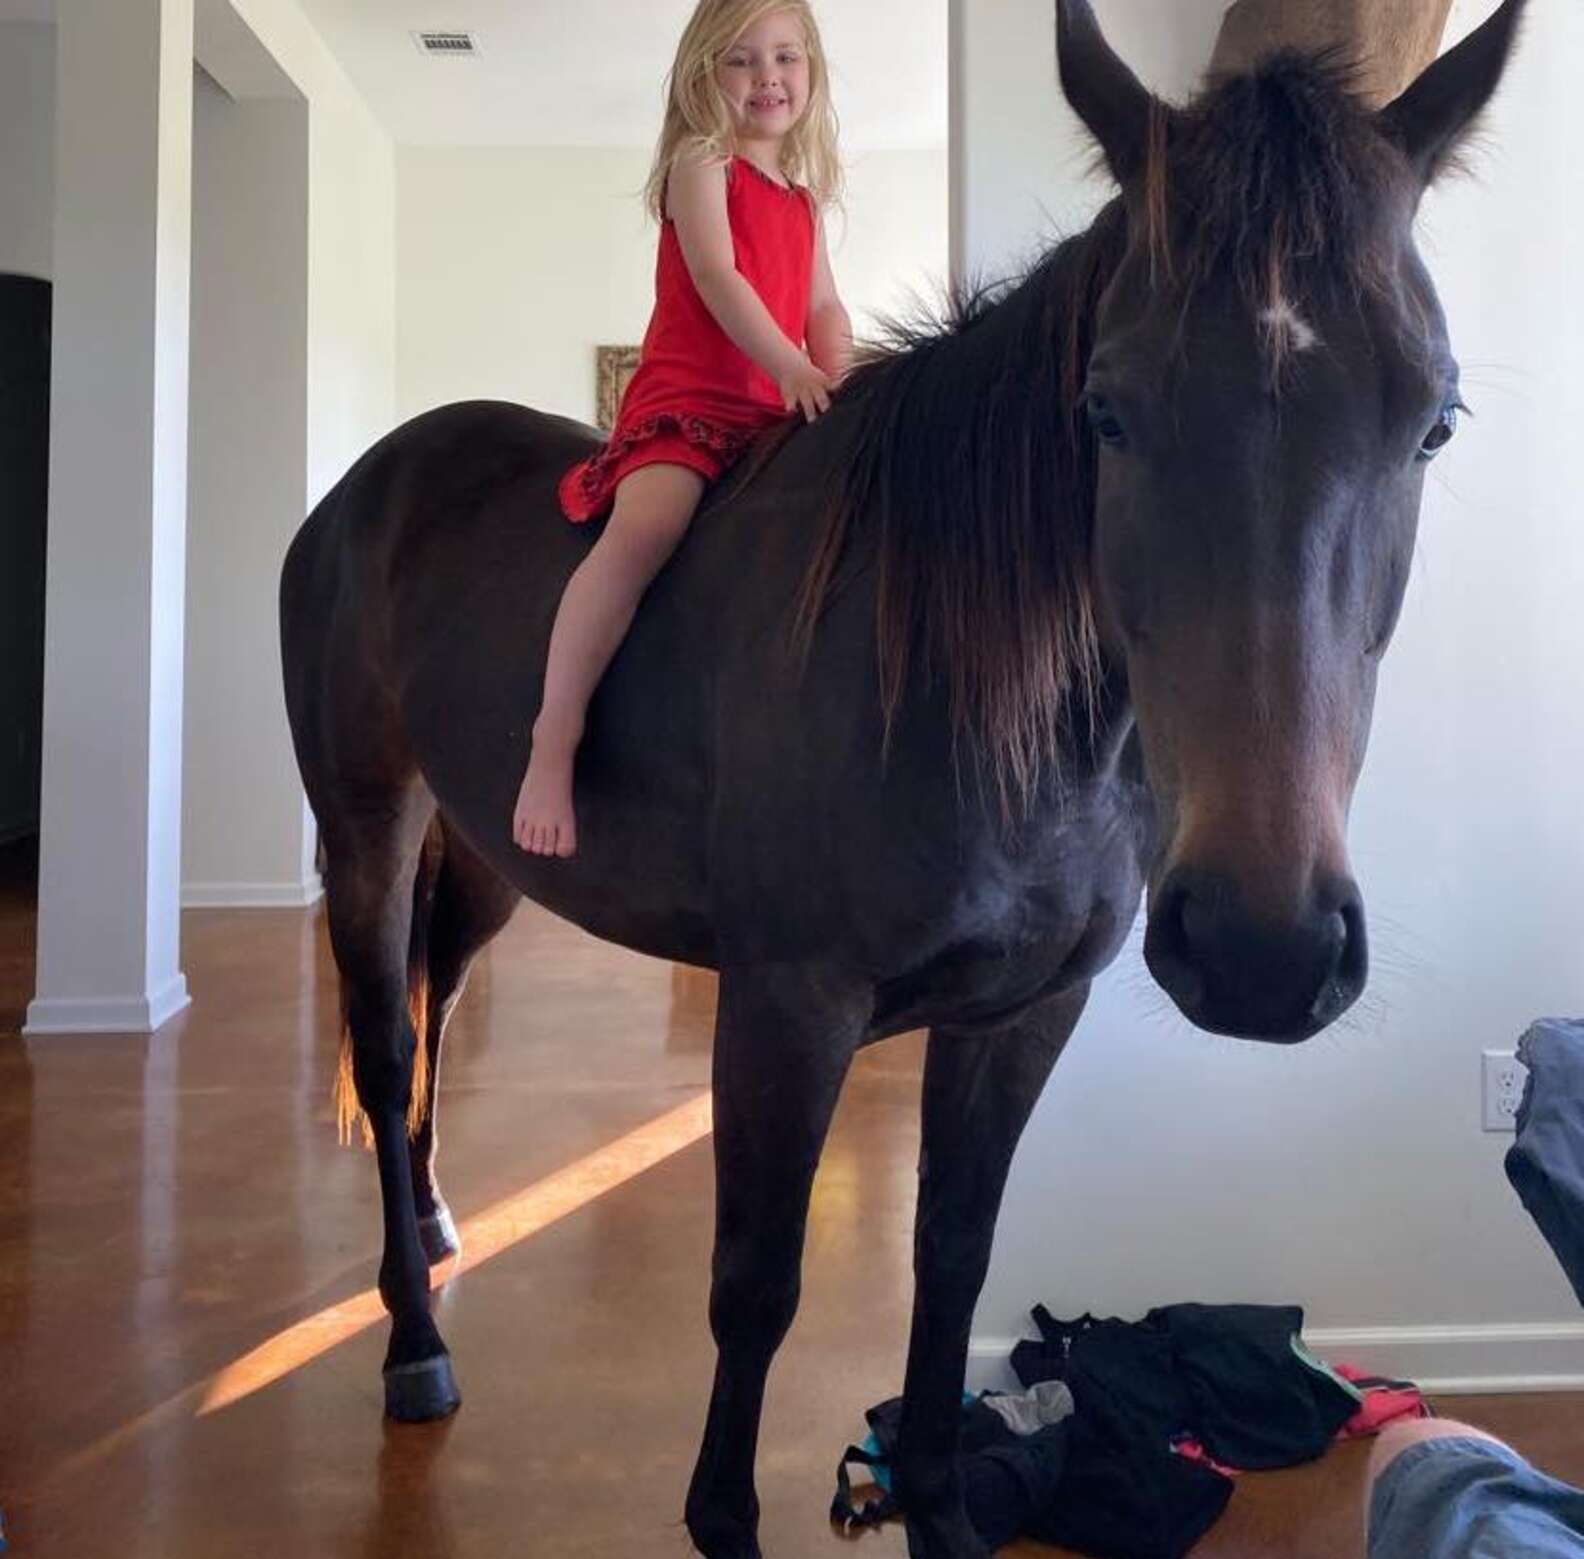 Menina de 5 anos é tão encantada por cavalos que leva um escondido para seu  quarto (vídeo)